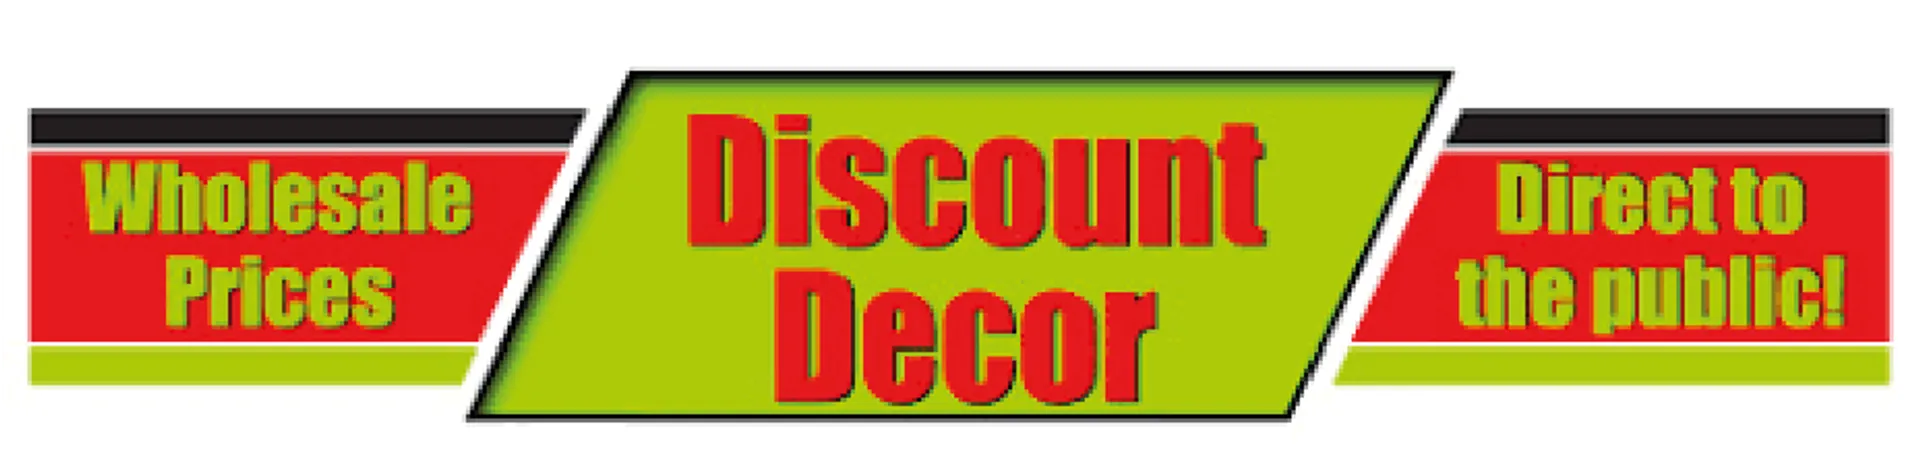 DISCOUNT DECOR logo